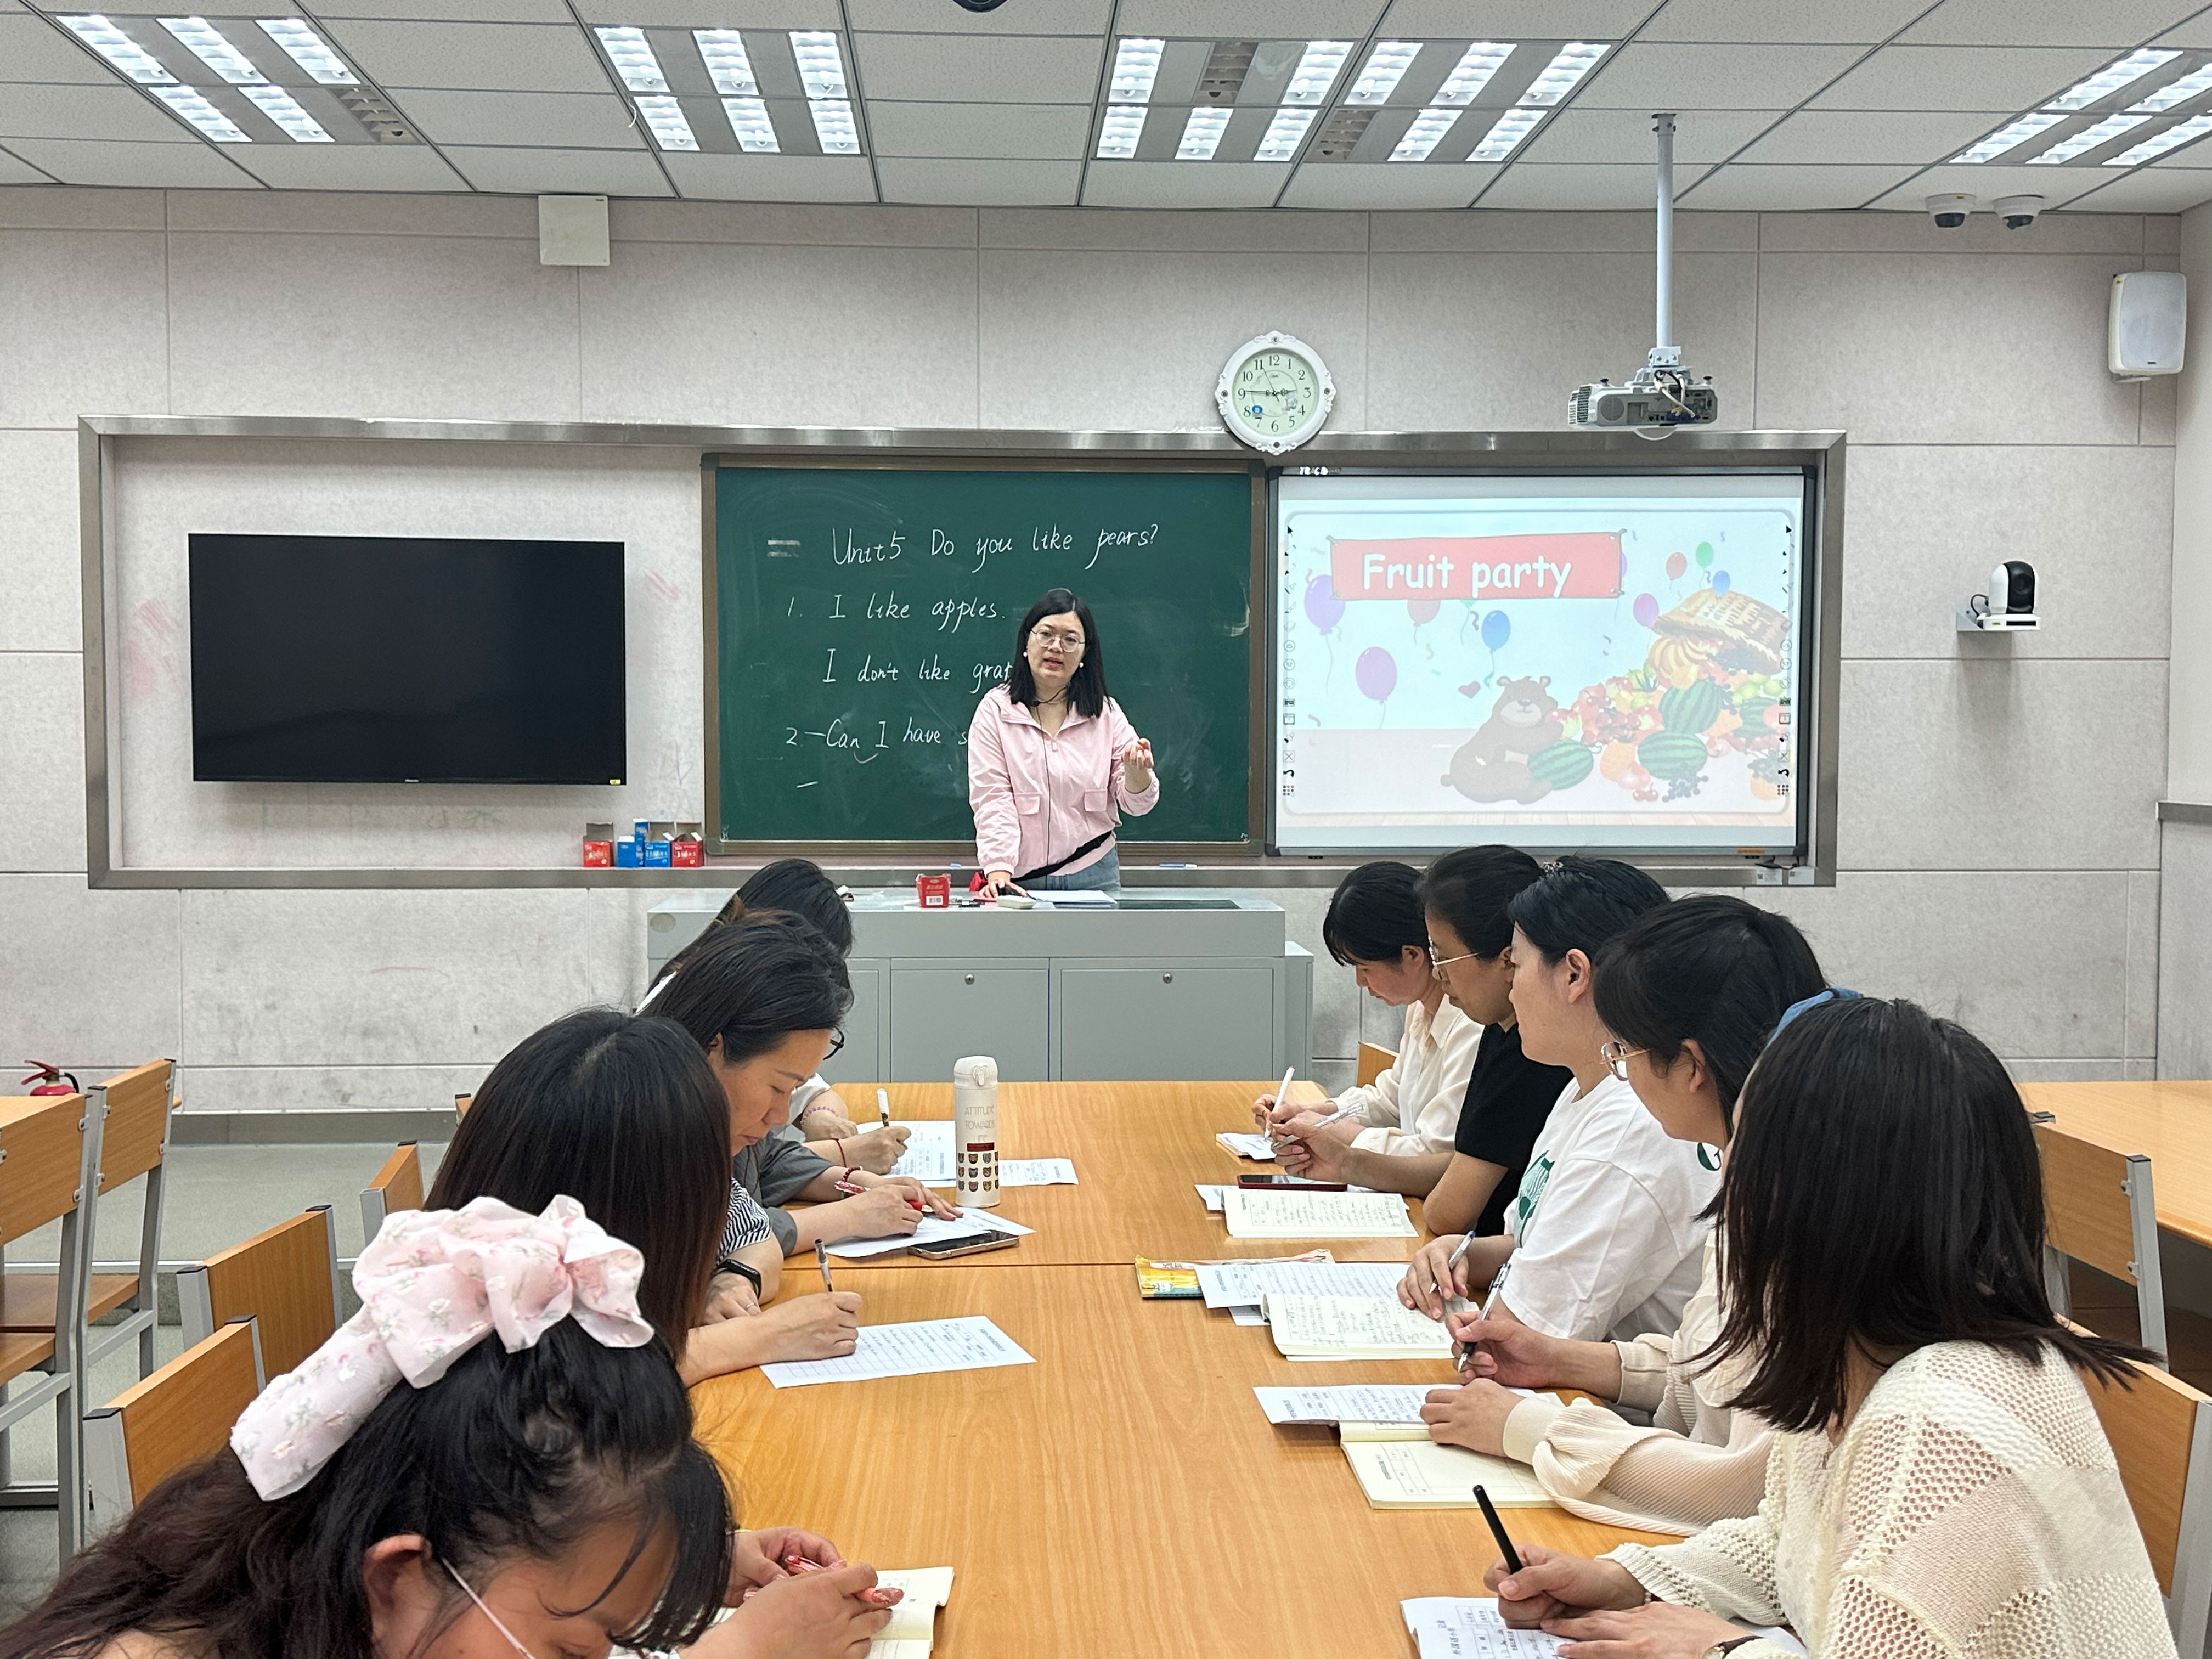 联合教研促交流 笃行致远共成长  郑州经开区外国语小学教育集团开展英语学科主题教研活动